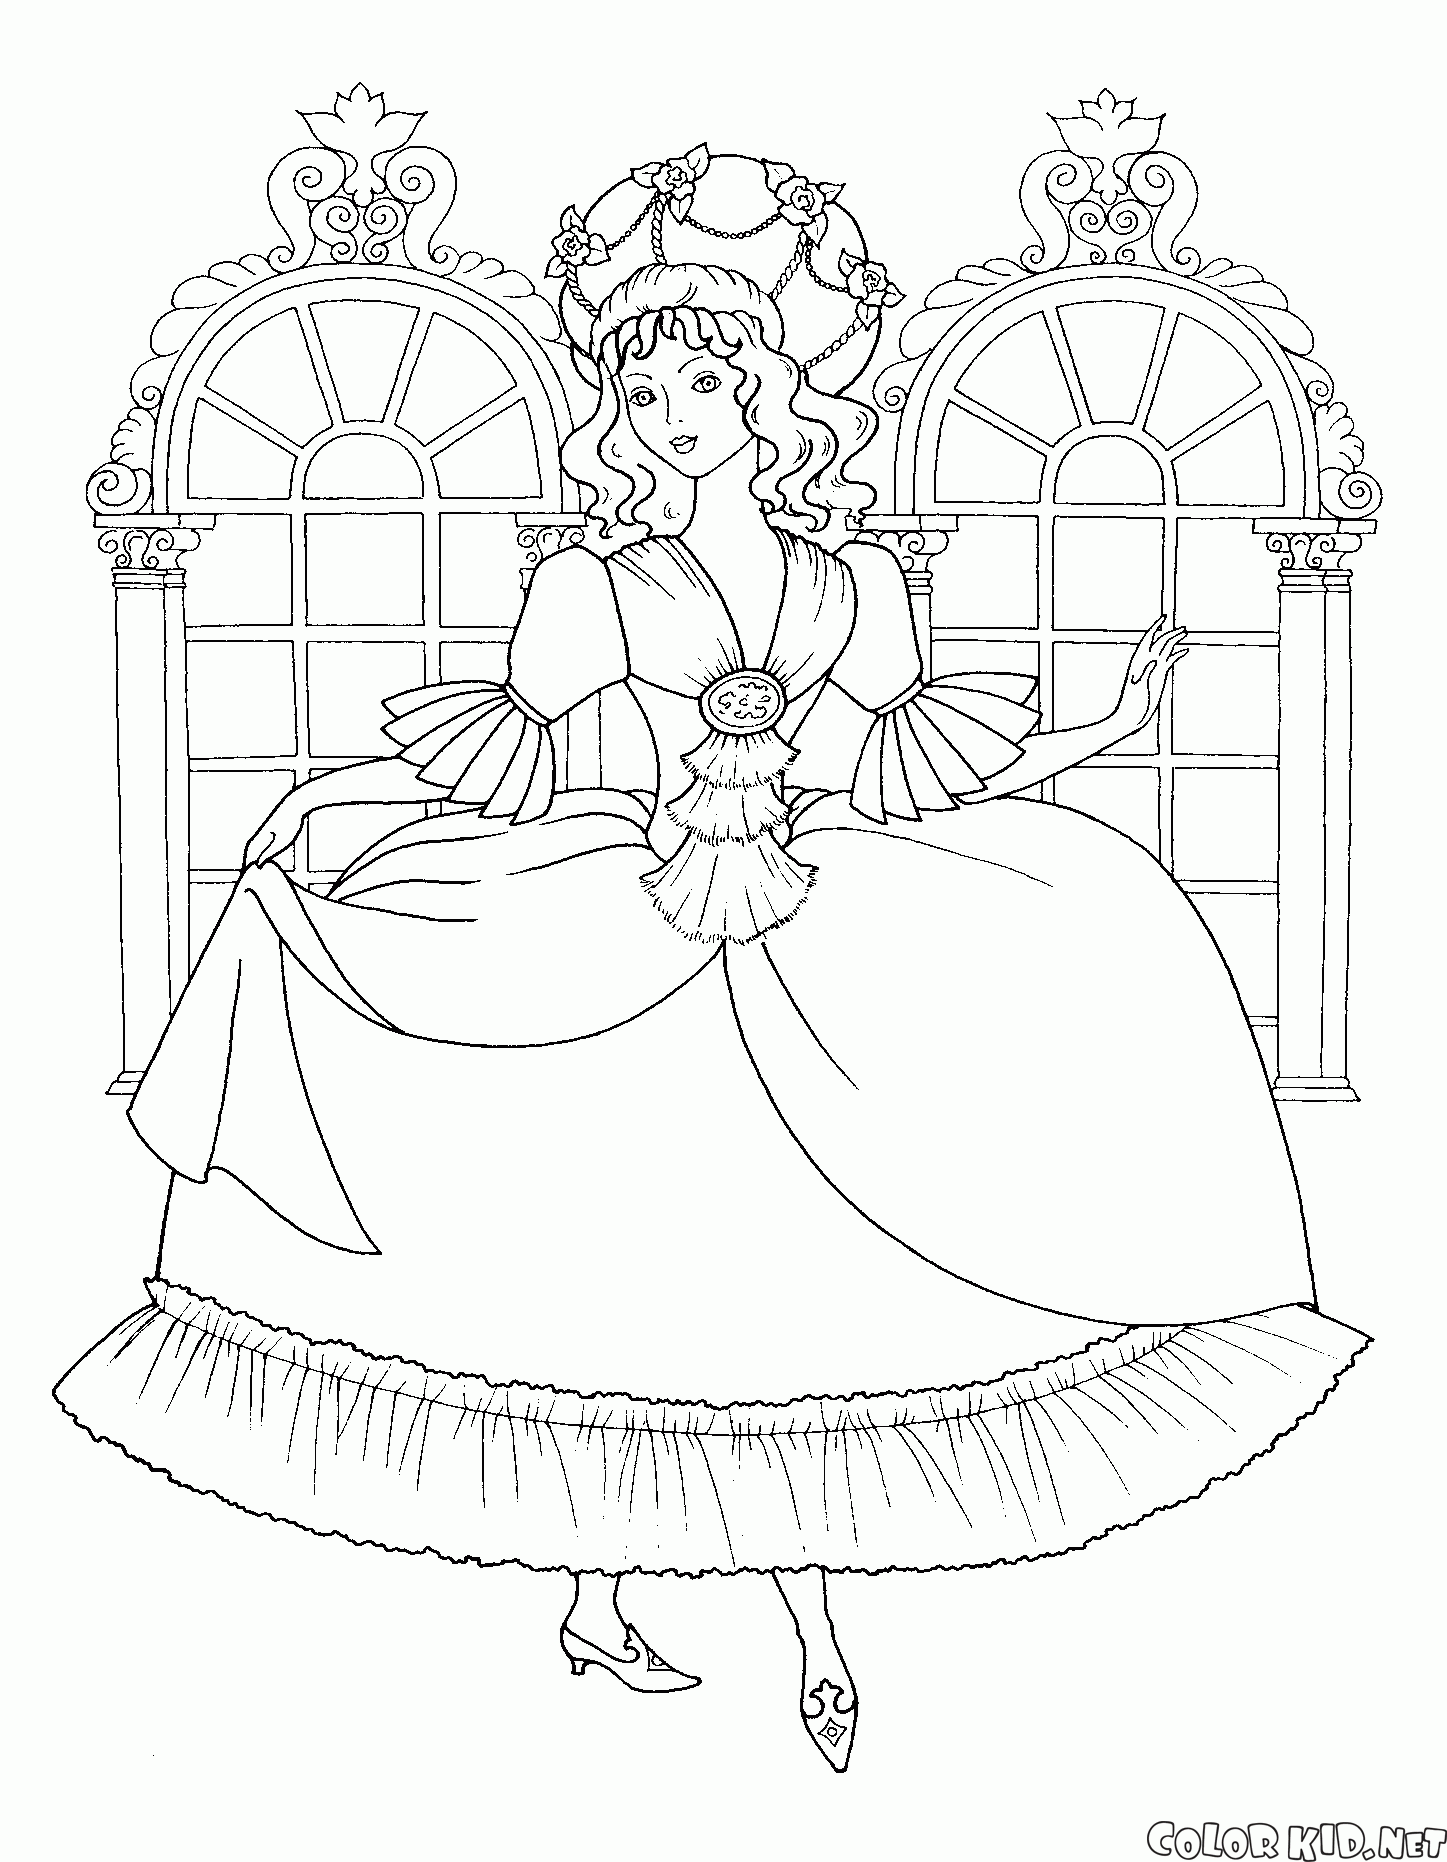 填色画 - 白雪公主與一籃子